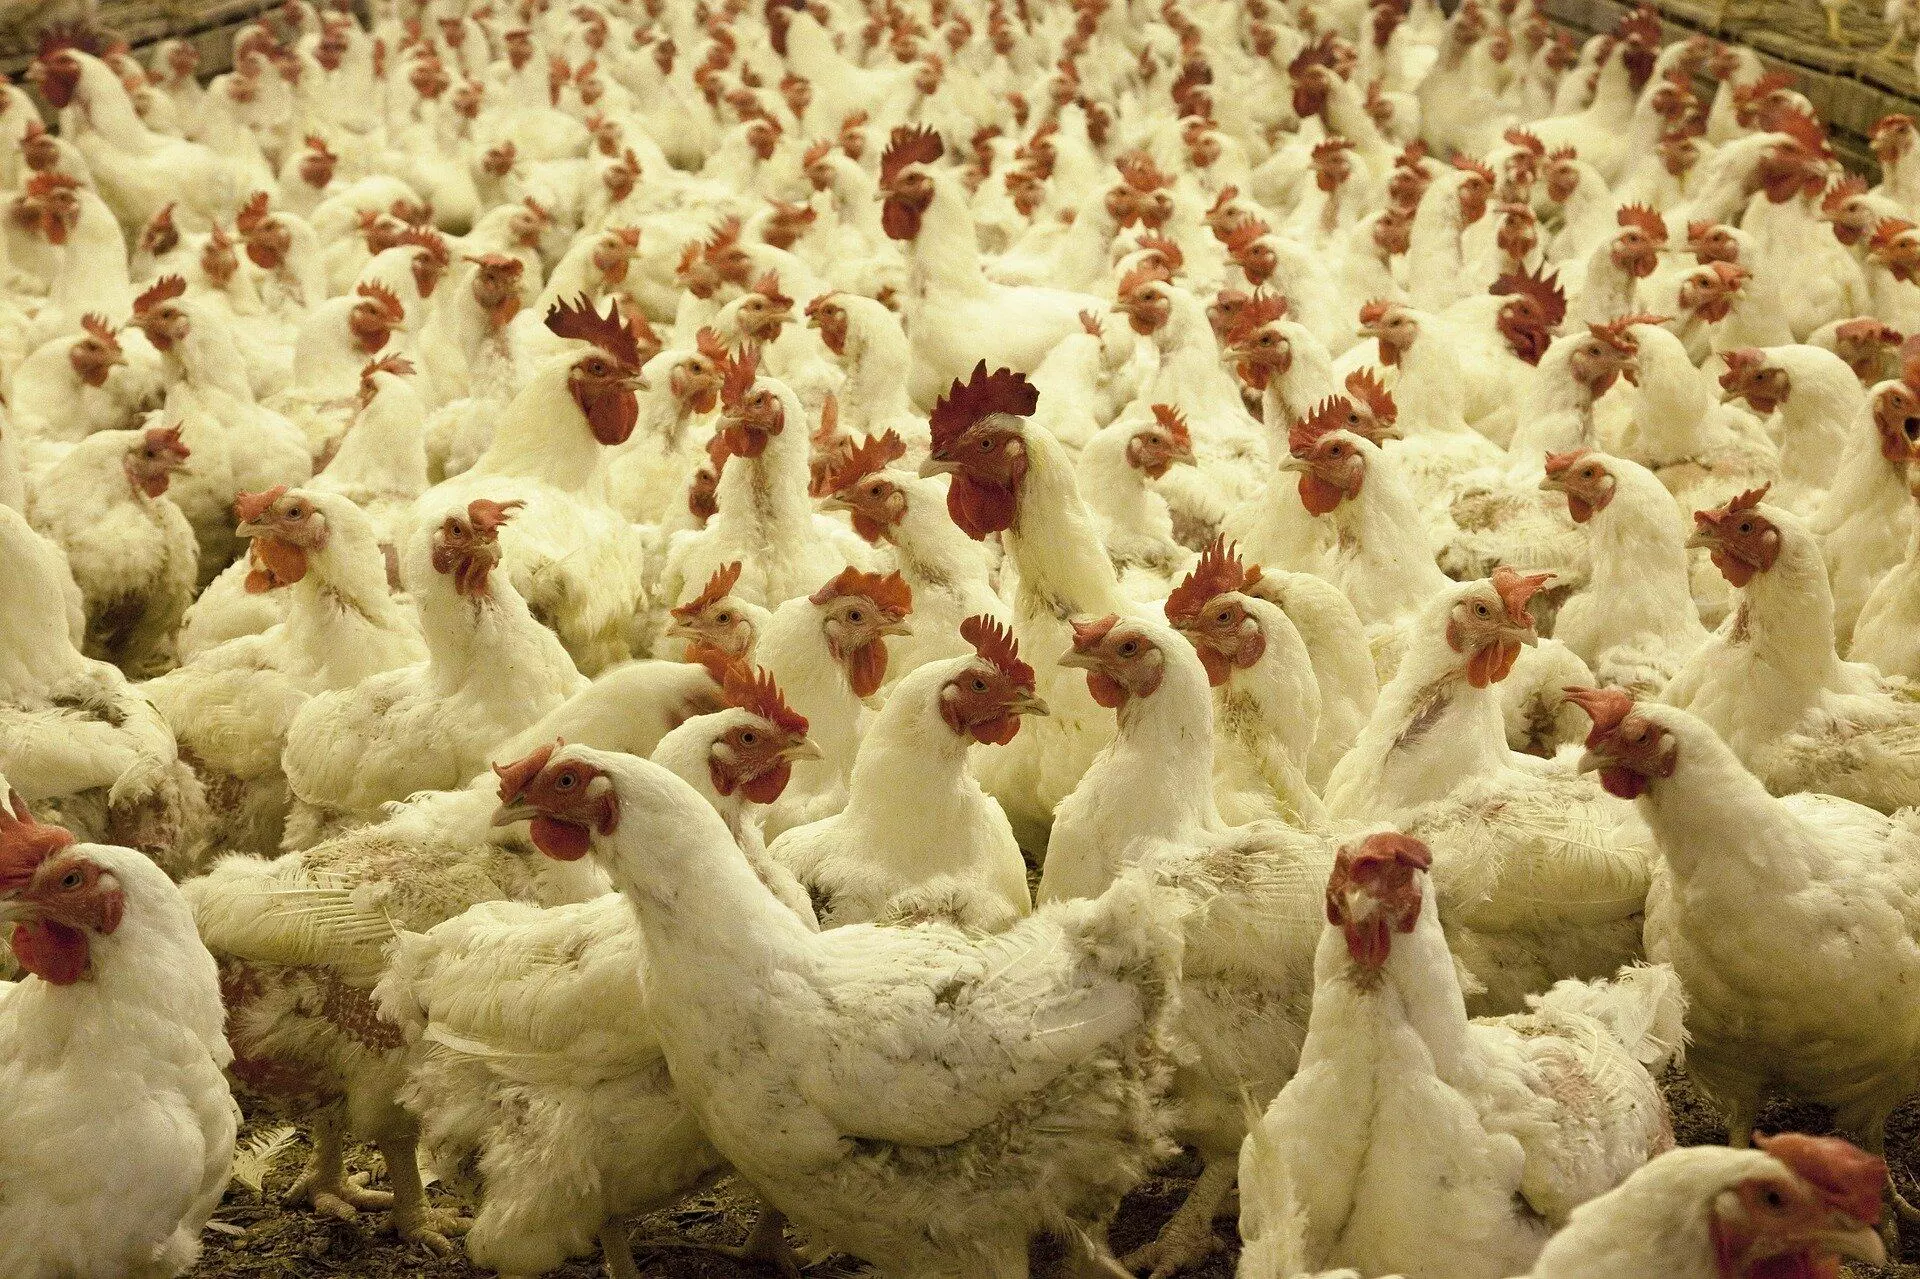 अंडा-चिकन खाने से नहीं फैलता कोरोना वायरस, अफवाहों के चलते पोल्ट्री इंडस्ट्री को लाखों का नुकसान